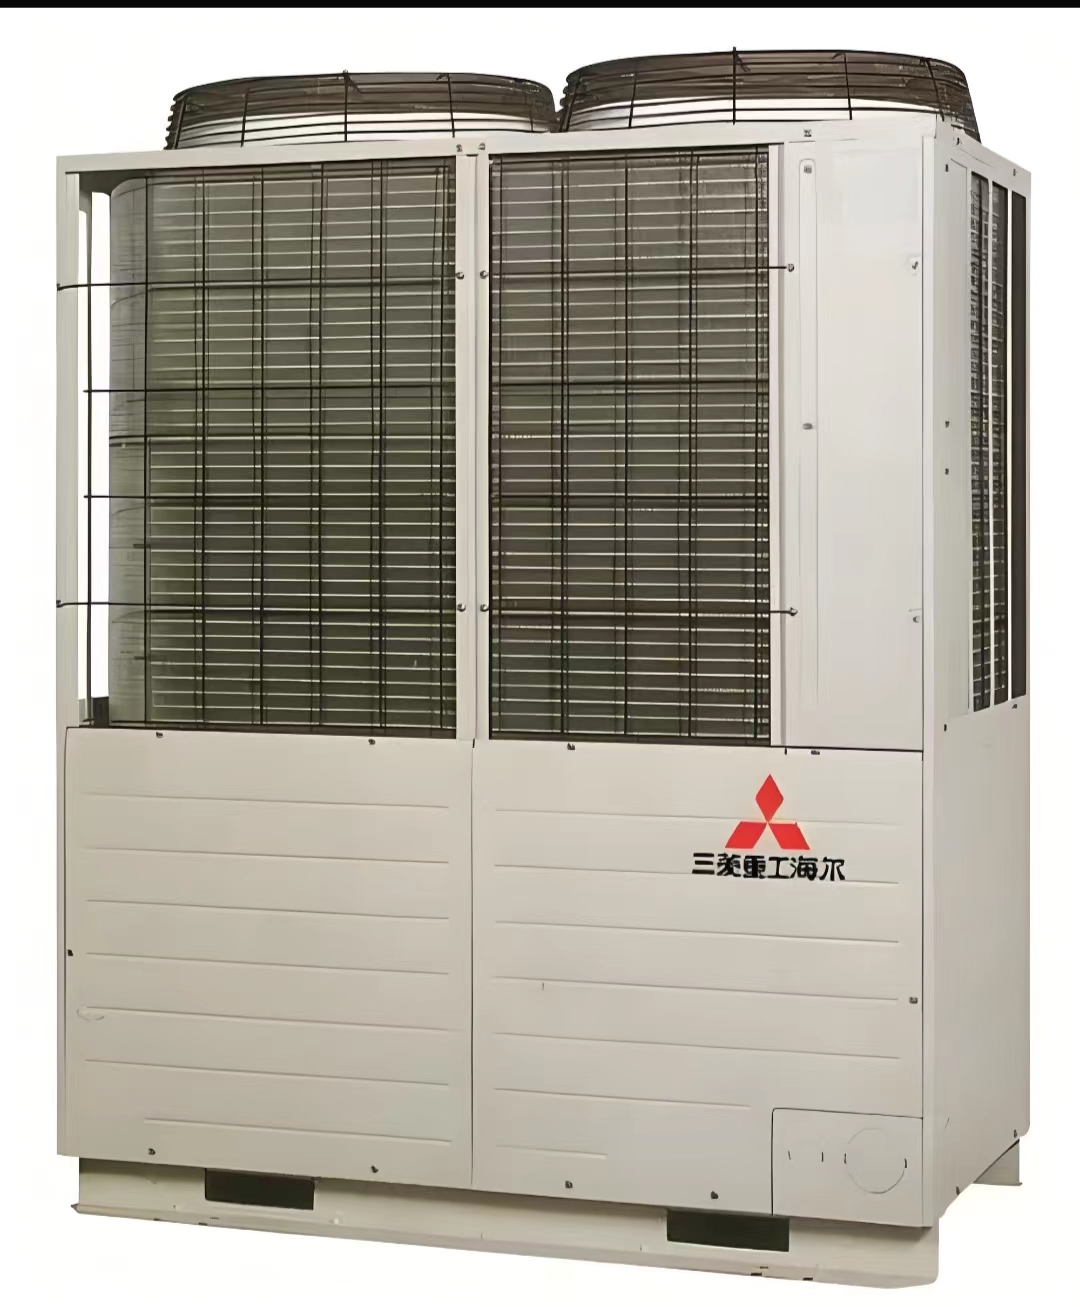 三菱重工Haier风冷模块机 风冷热泵机组 中央空调 销售安装设计 厂家价格 制冷设备批发